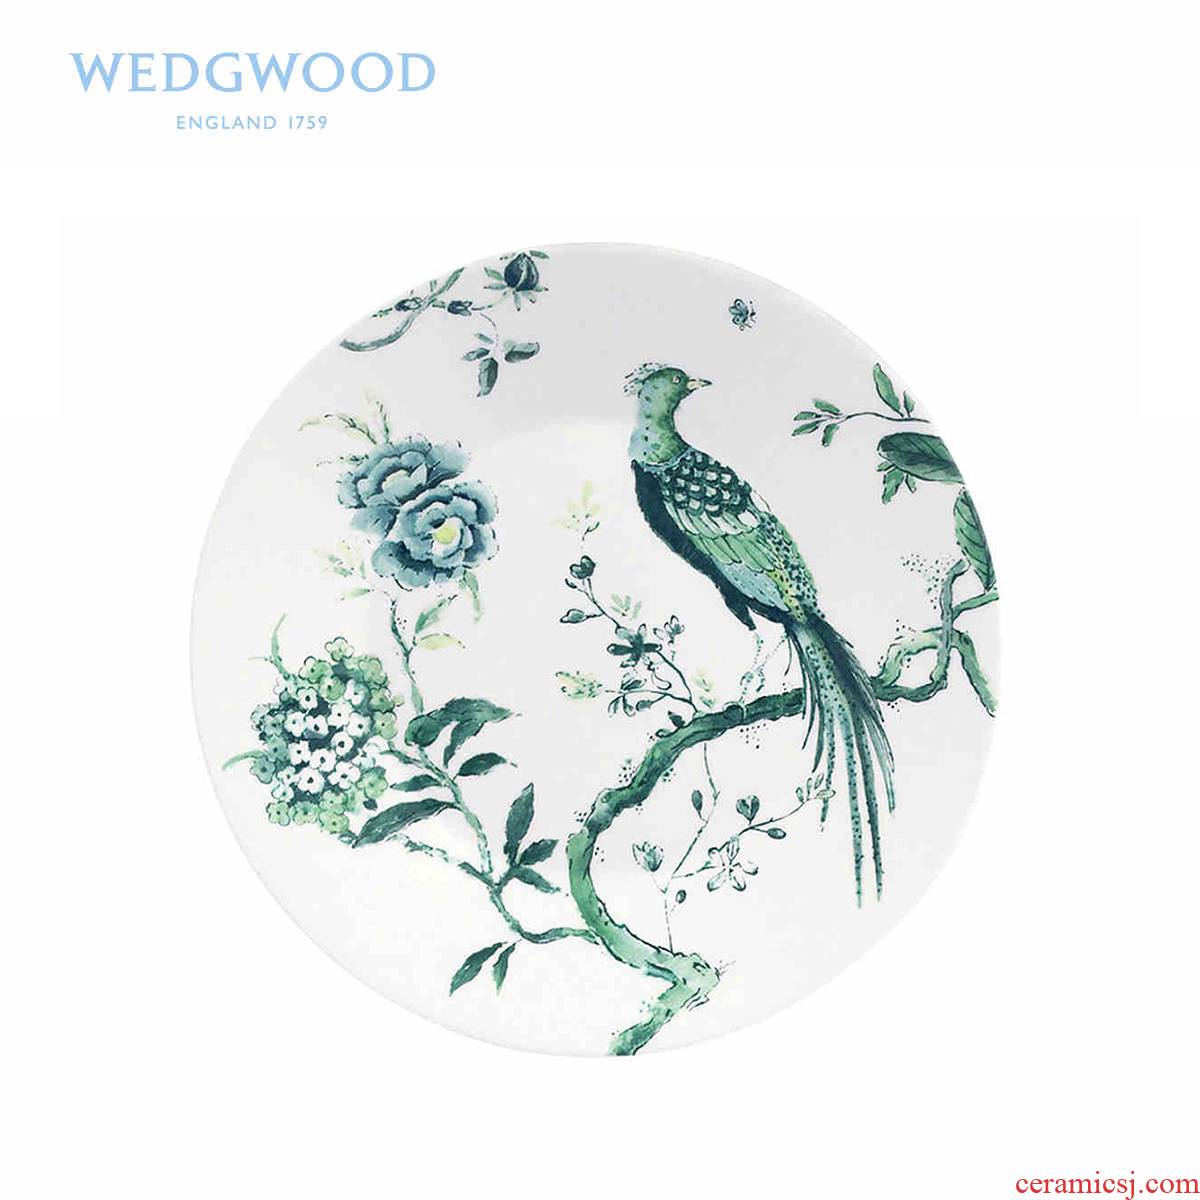 Wedgwood waterford Wedgwood Jasper conran wind 23 cm white ipads China porcelain bowl/plate